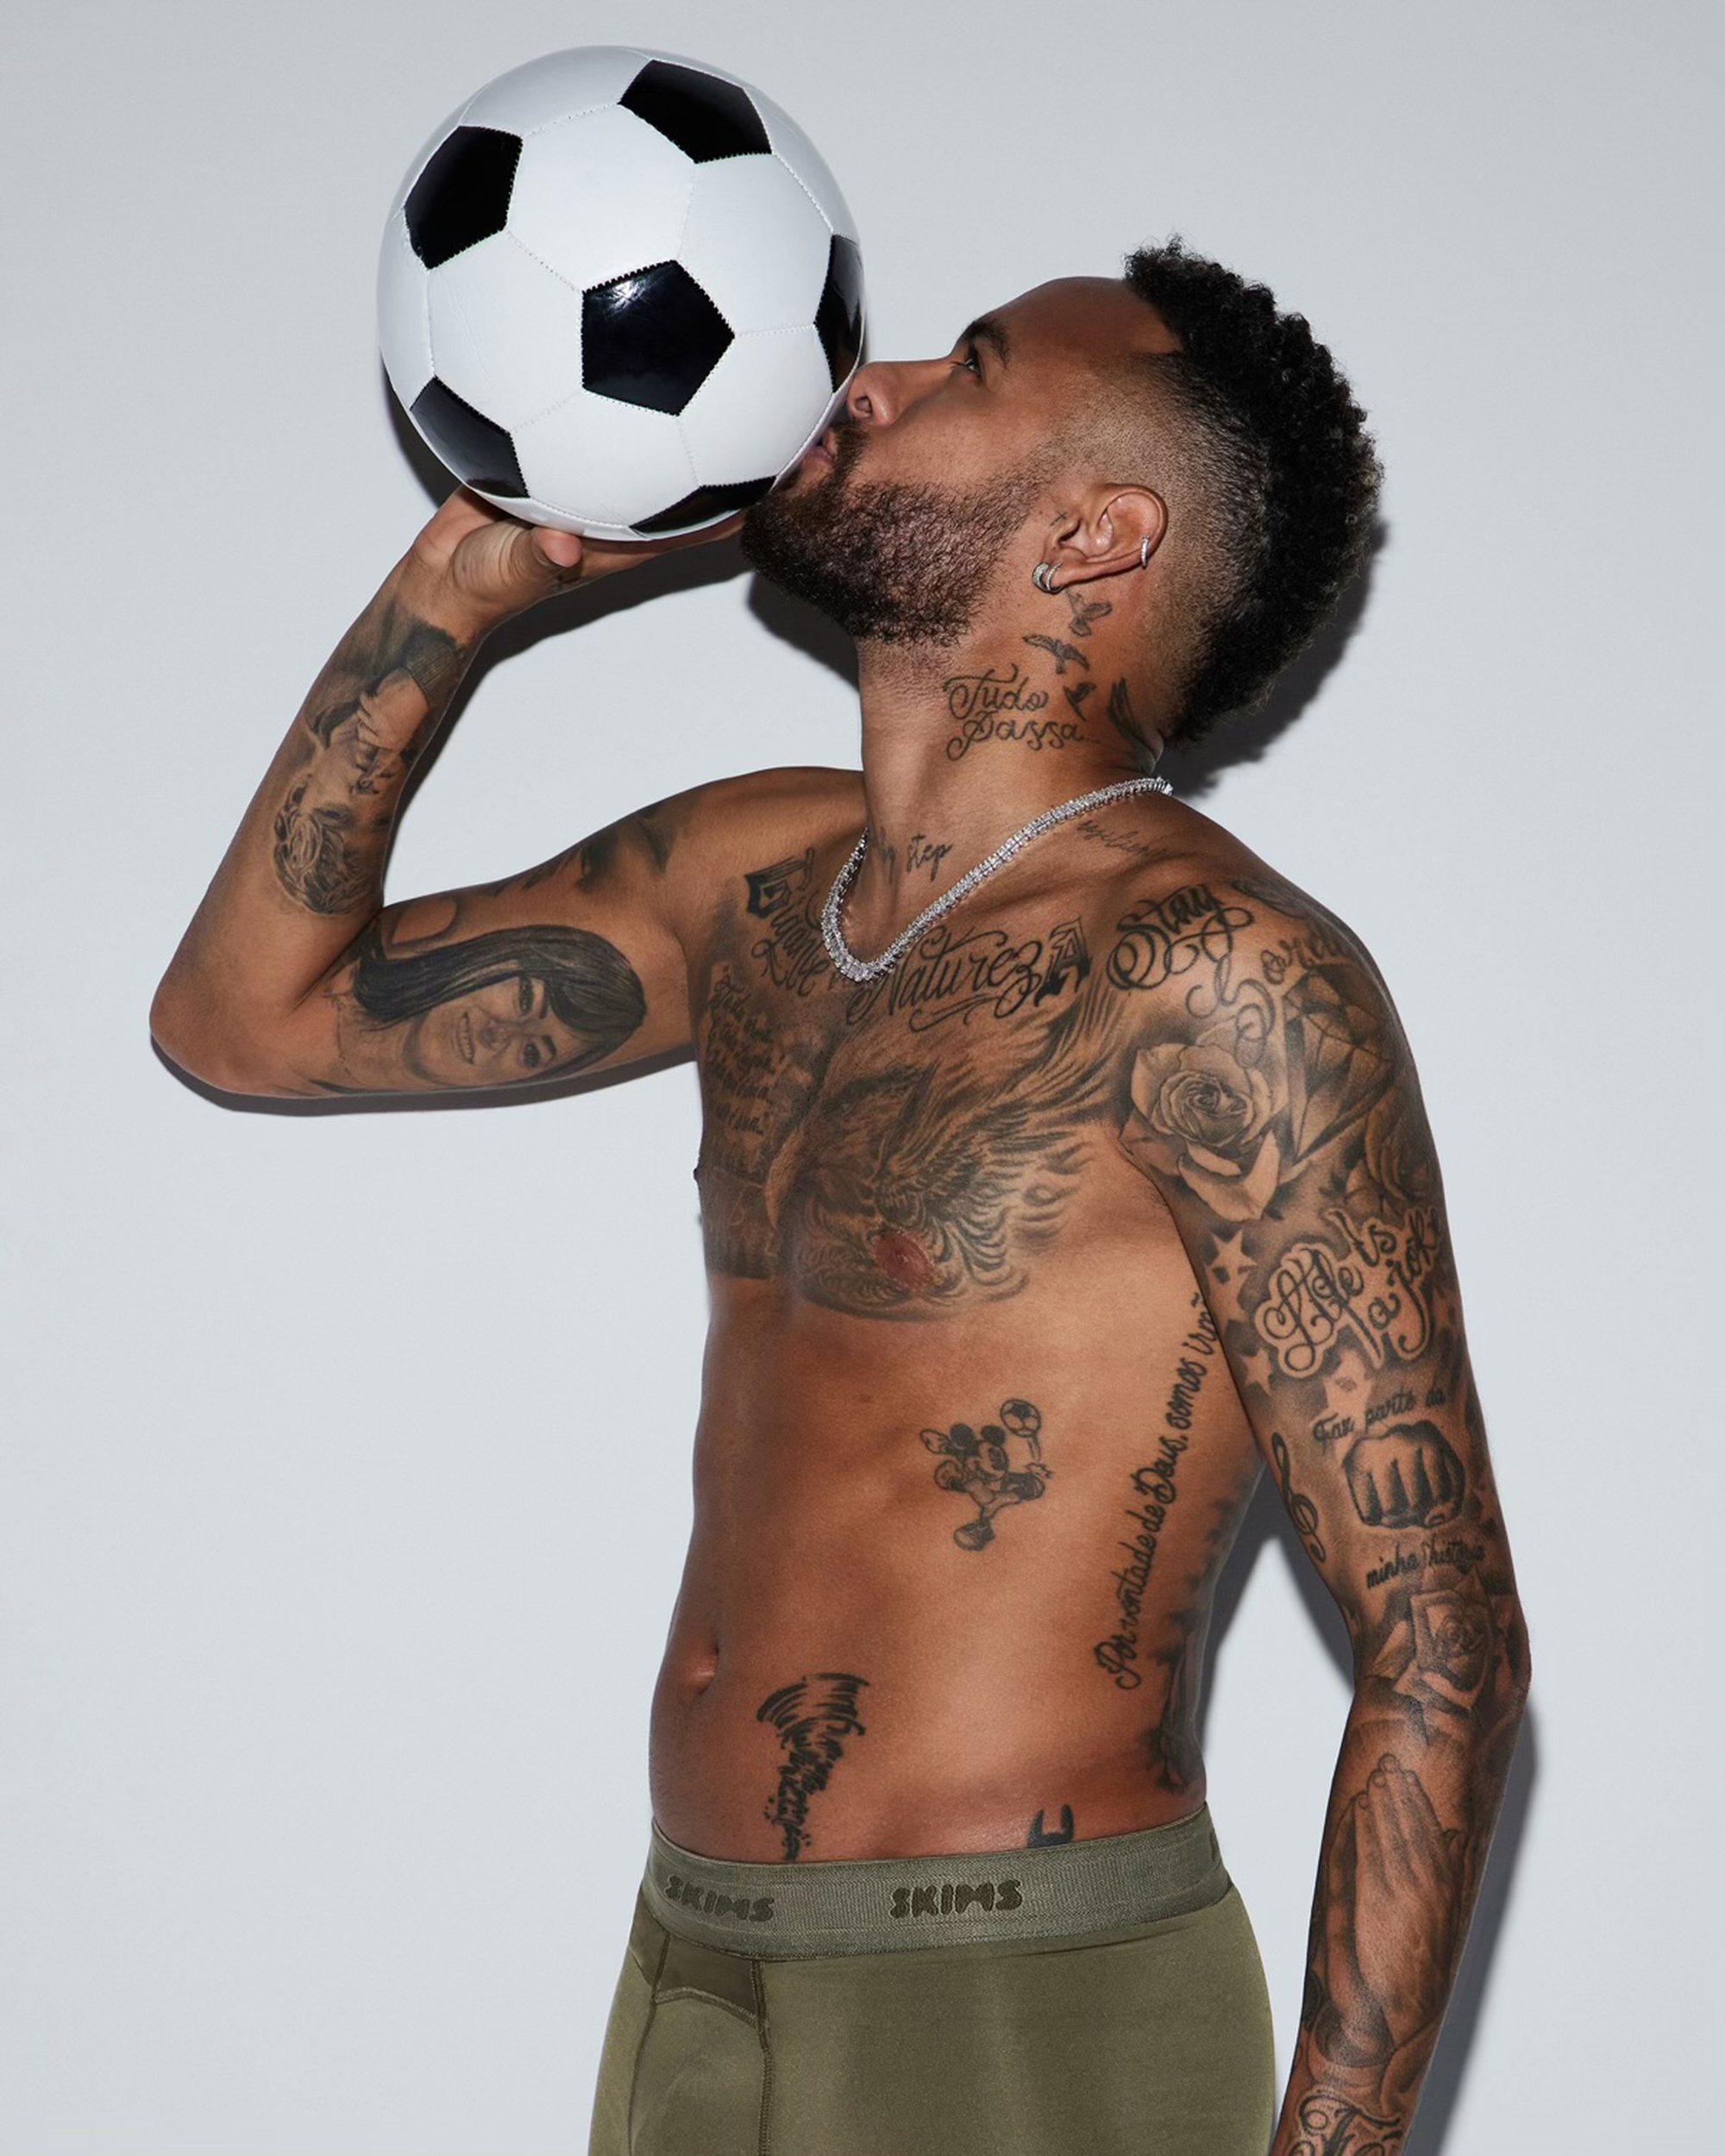 Neymar küsst einen Fußball 